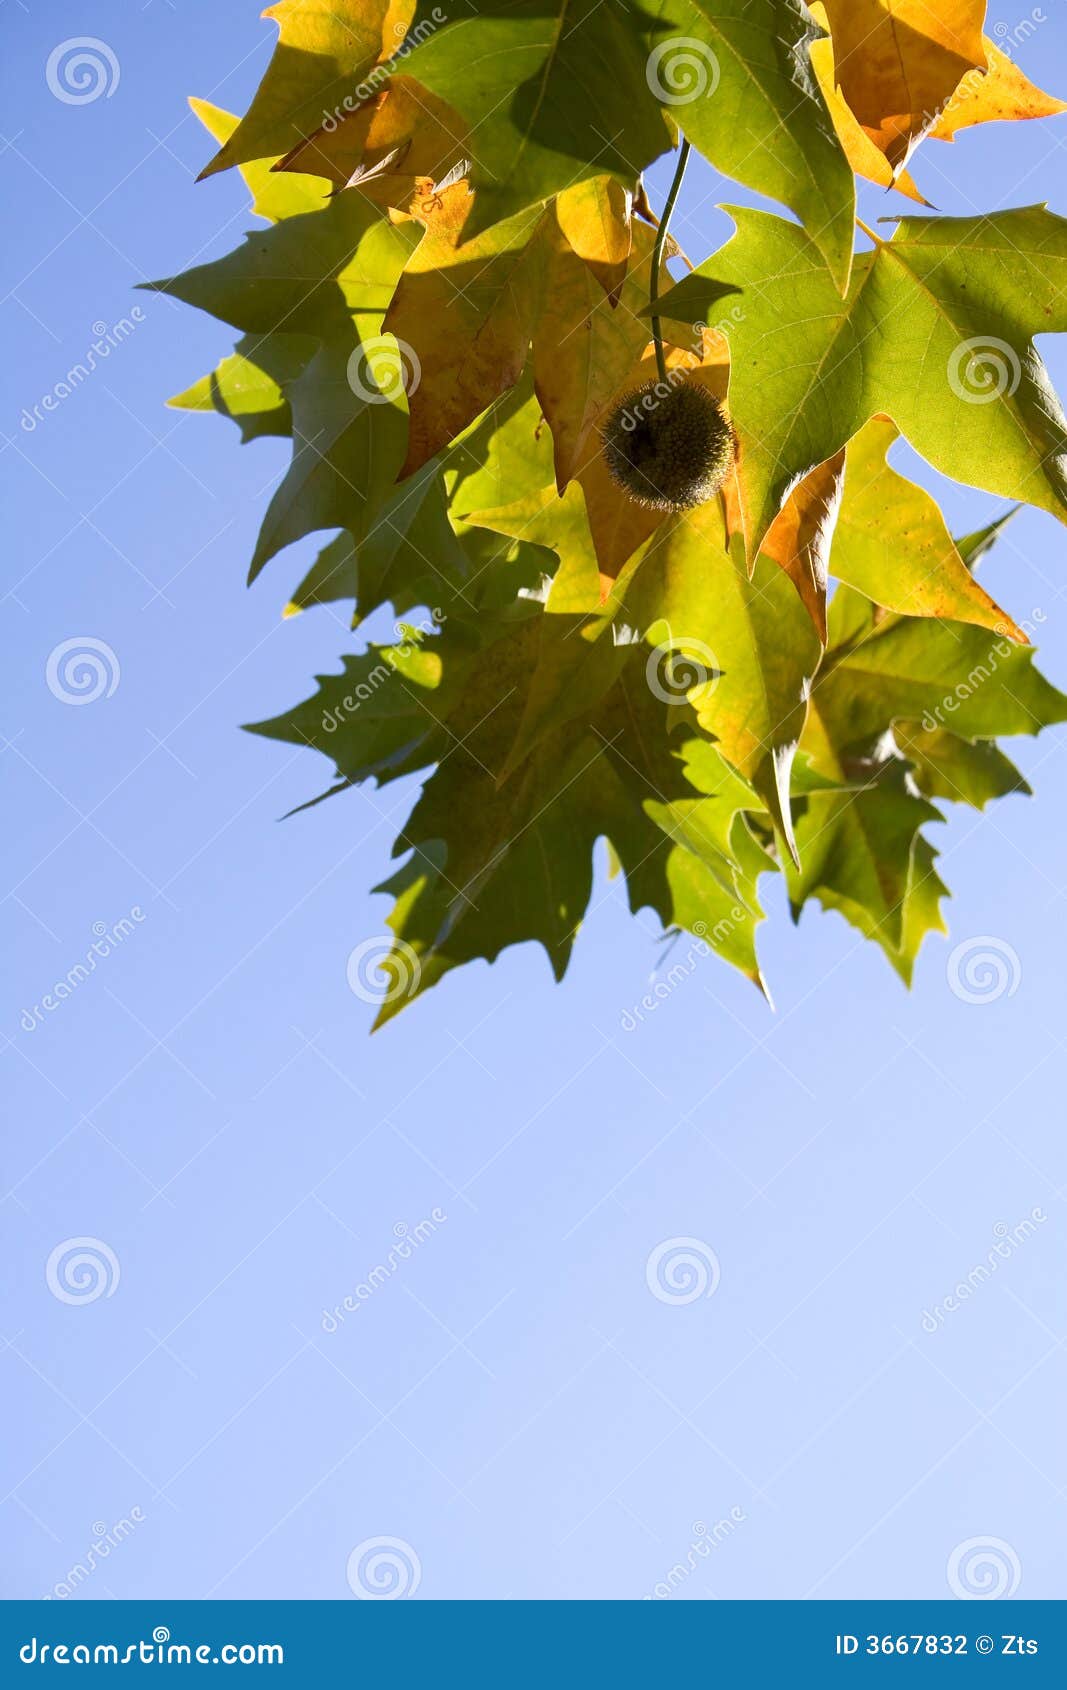 bright platanus tree leaves